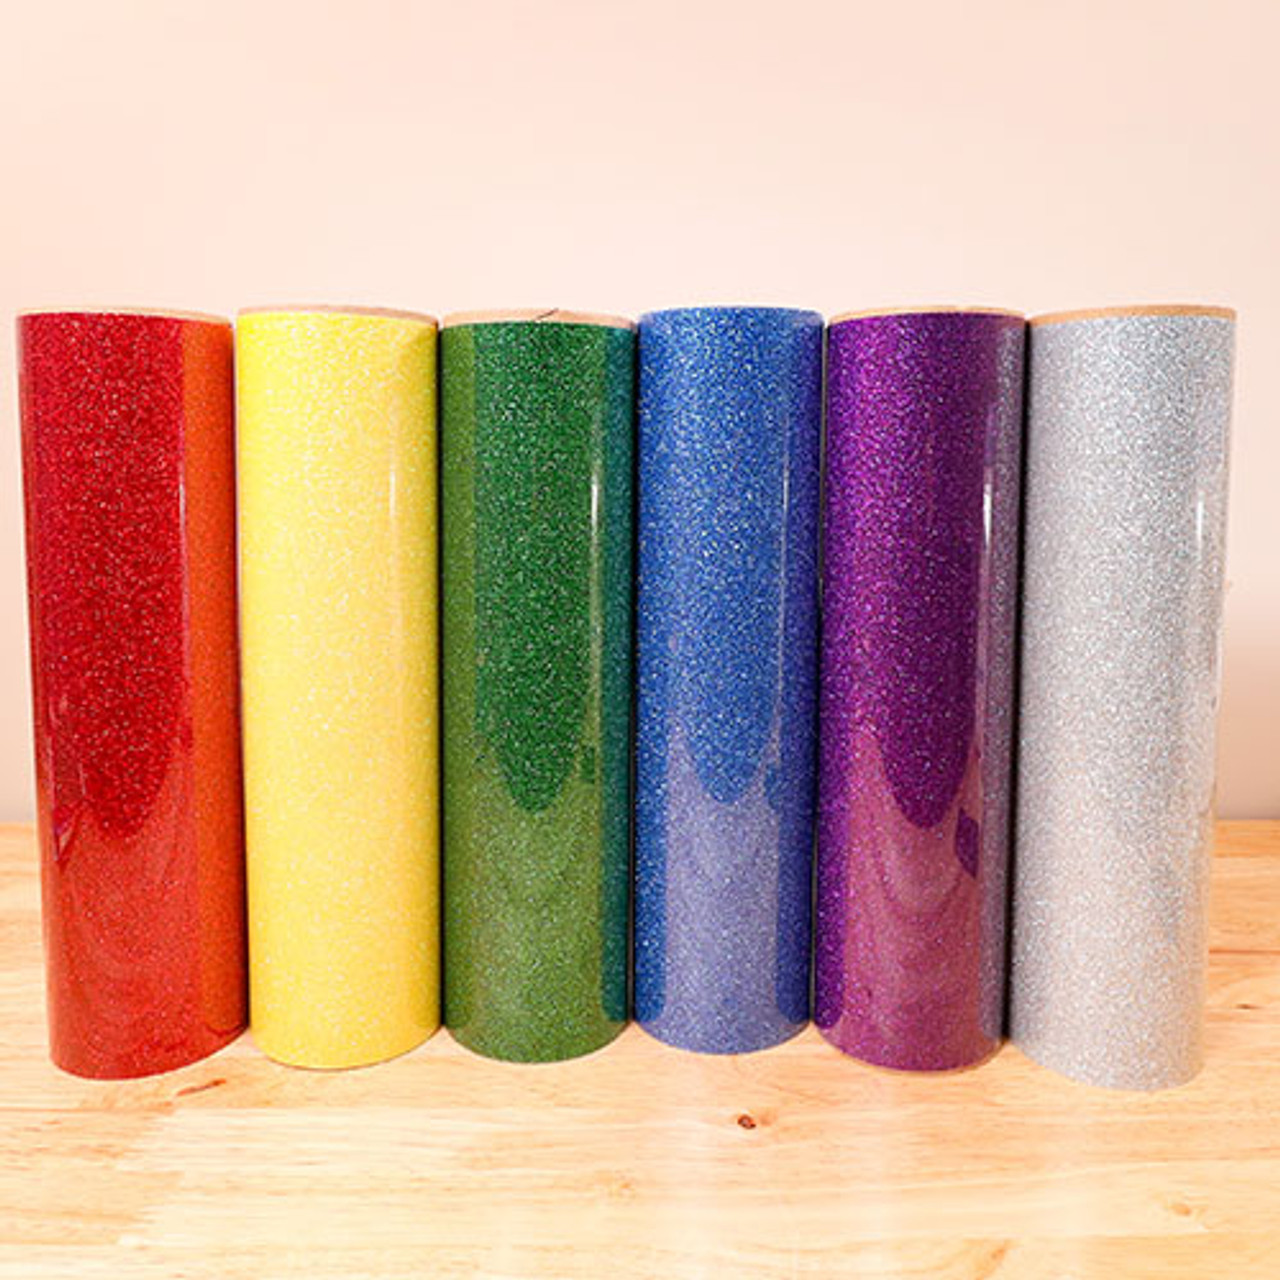 Siser Glitter Heat Transfer Vinyl (HTV) 20 x 150 ft Roll - 45 Colors Available, Aqua